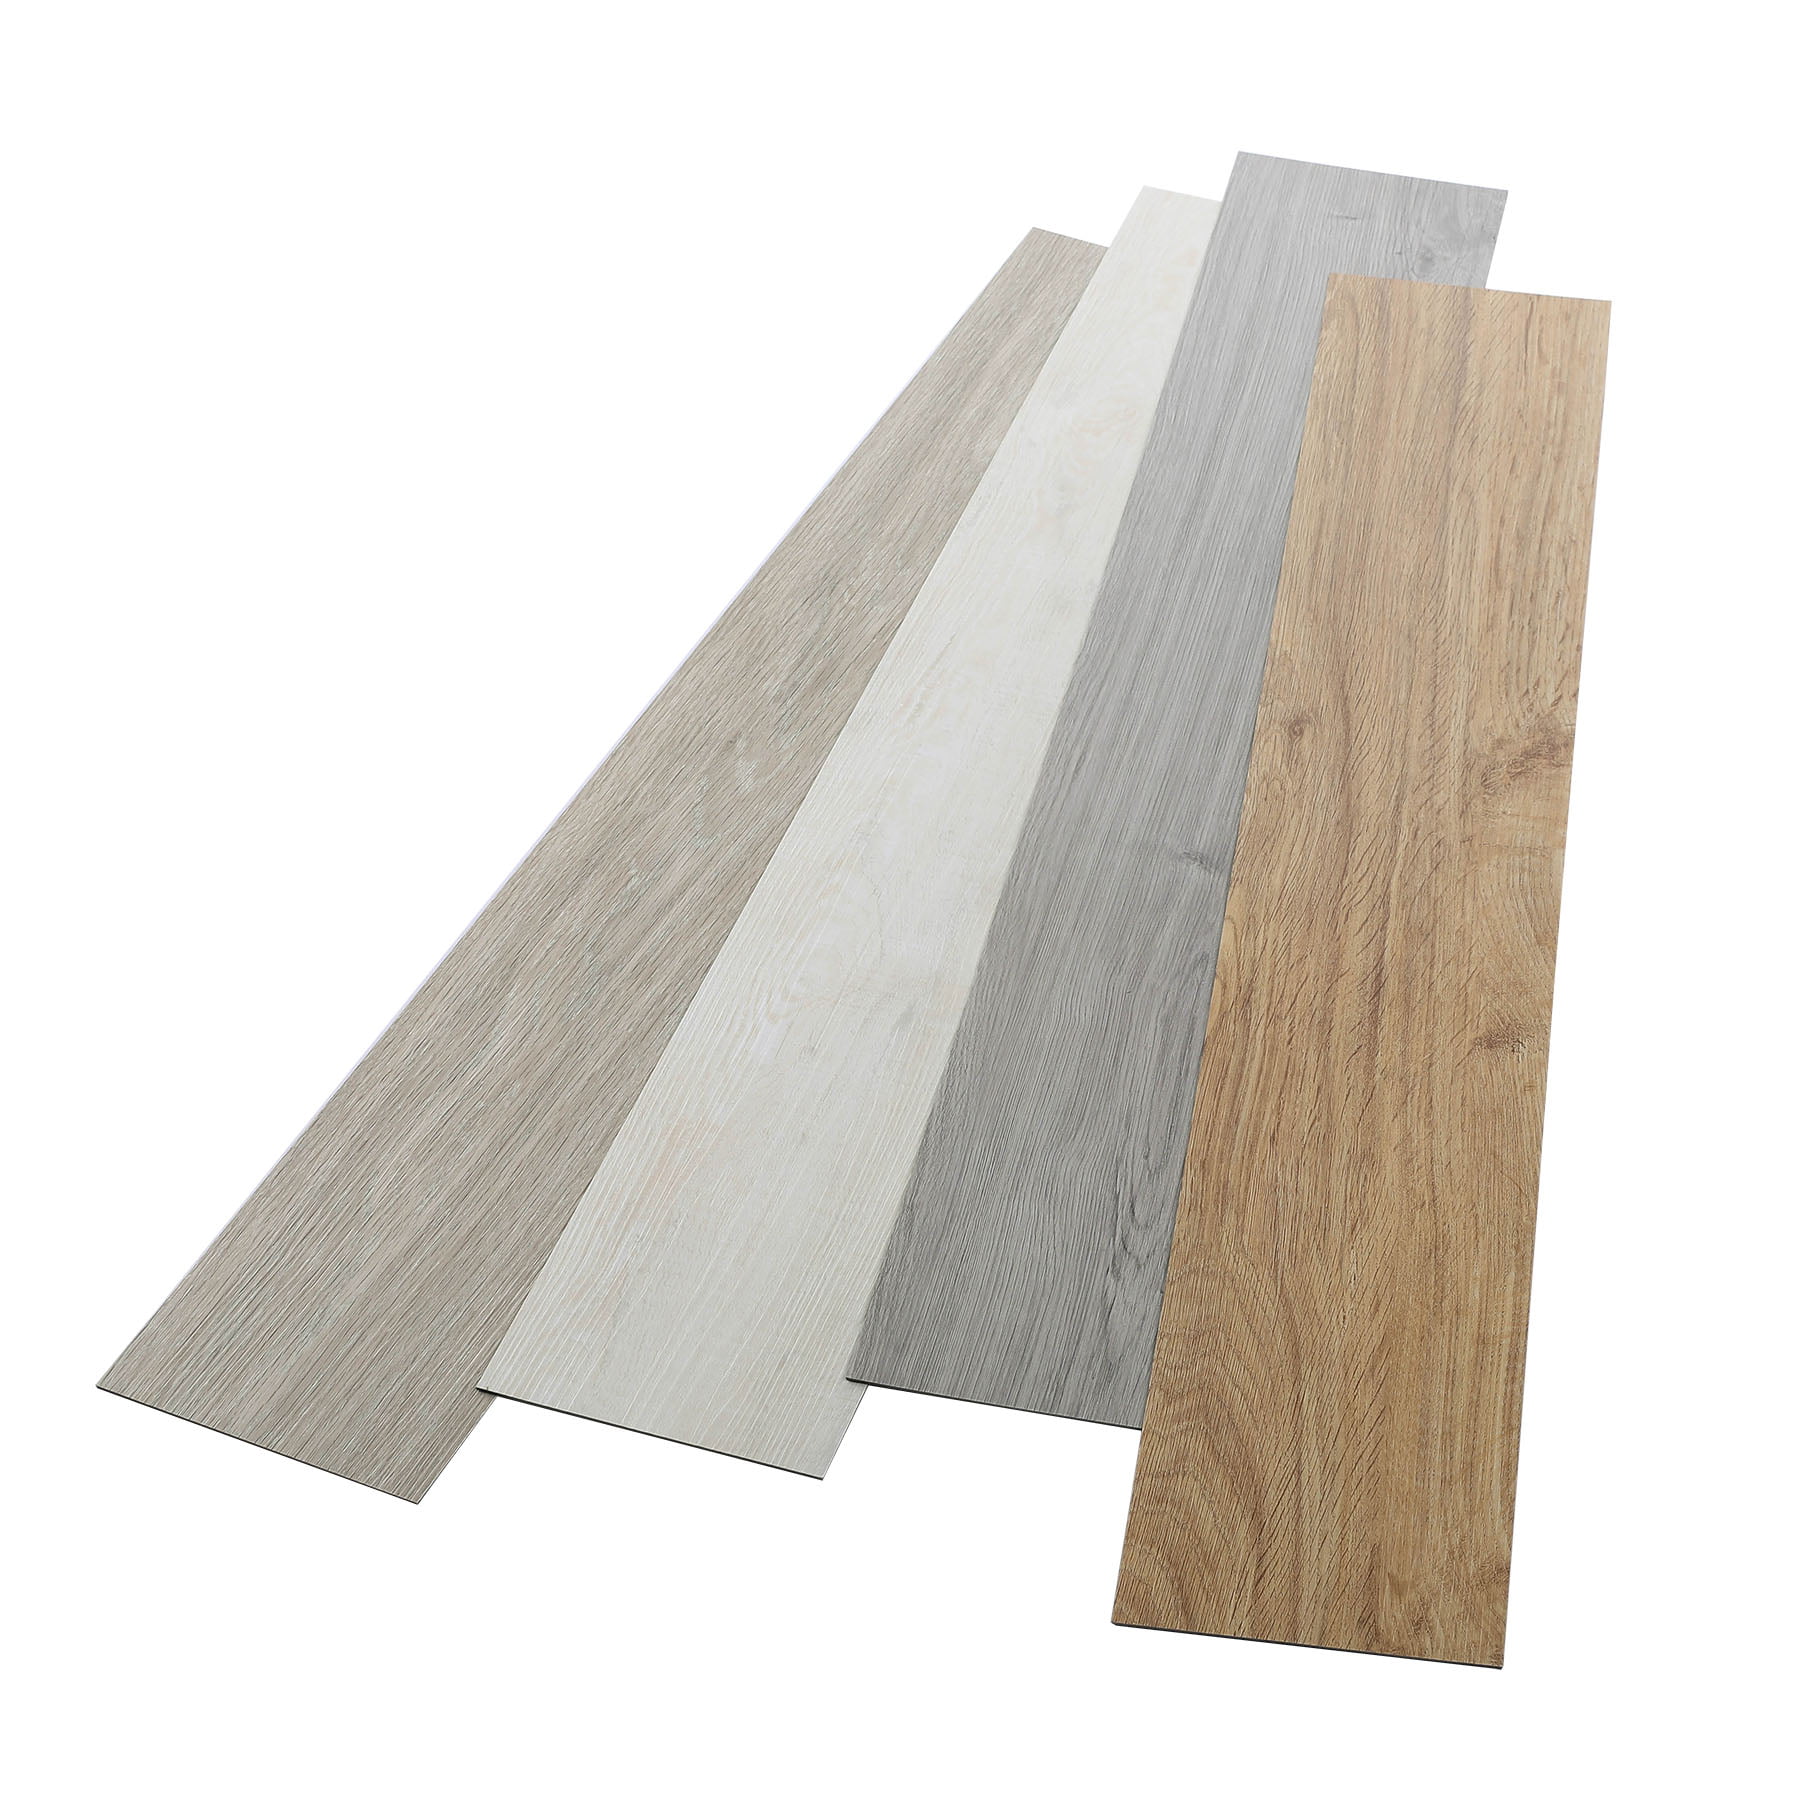 CO-Z 16 PCS/24 Square Feet 2.0mm Thick Oak - 24 sq ft/Pack Vinyl Floor Planks Adhesive Floor Tiles